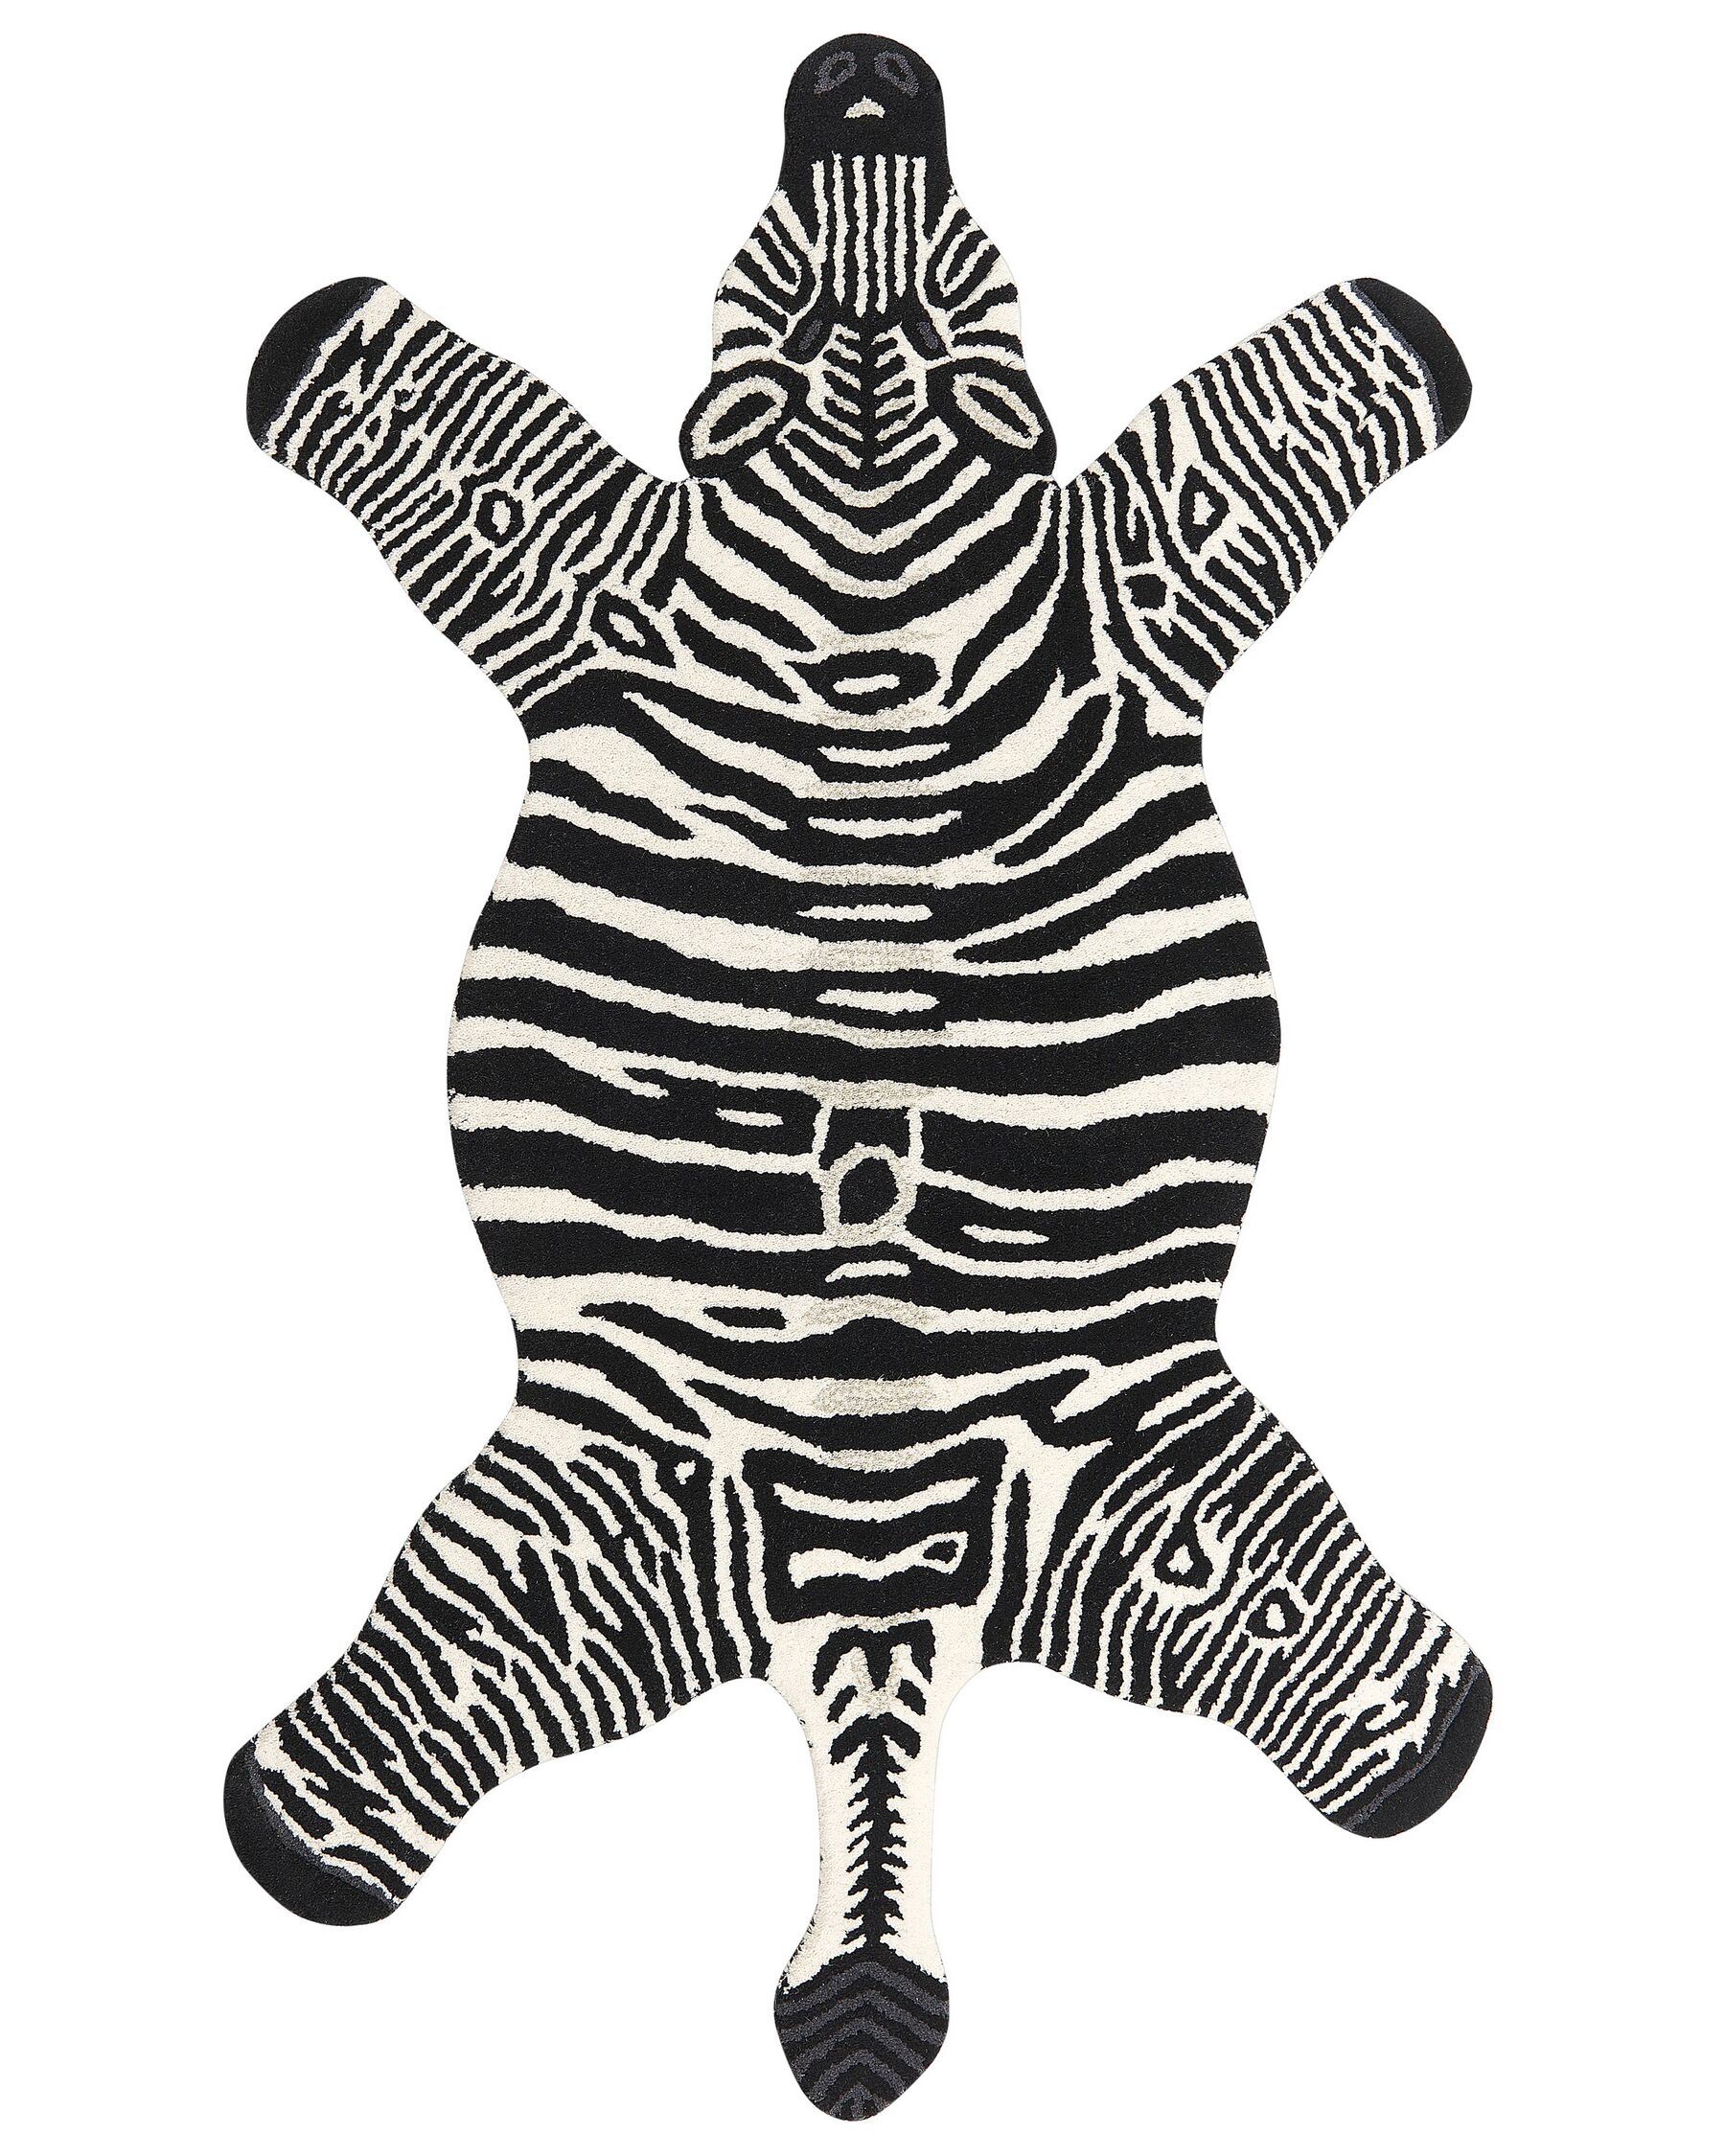 Tapete para crianças em lã preta e branca impressão de zebra 100 x 160 cm MARTY_873986